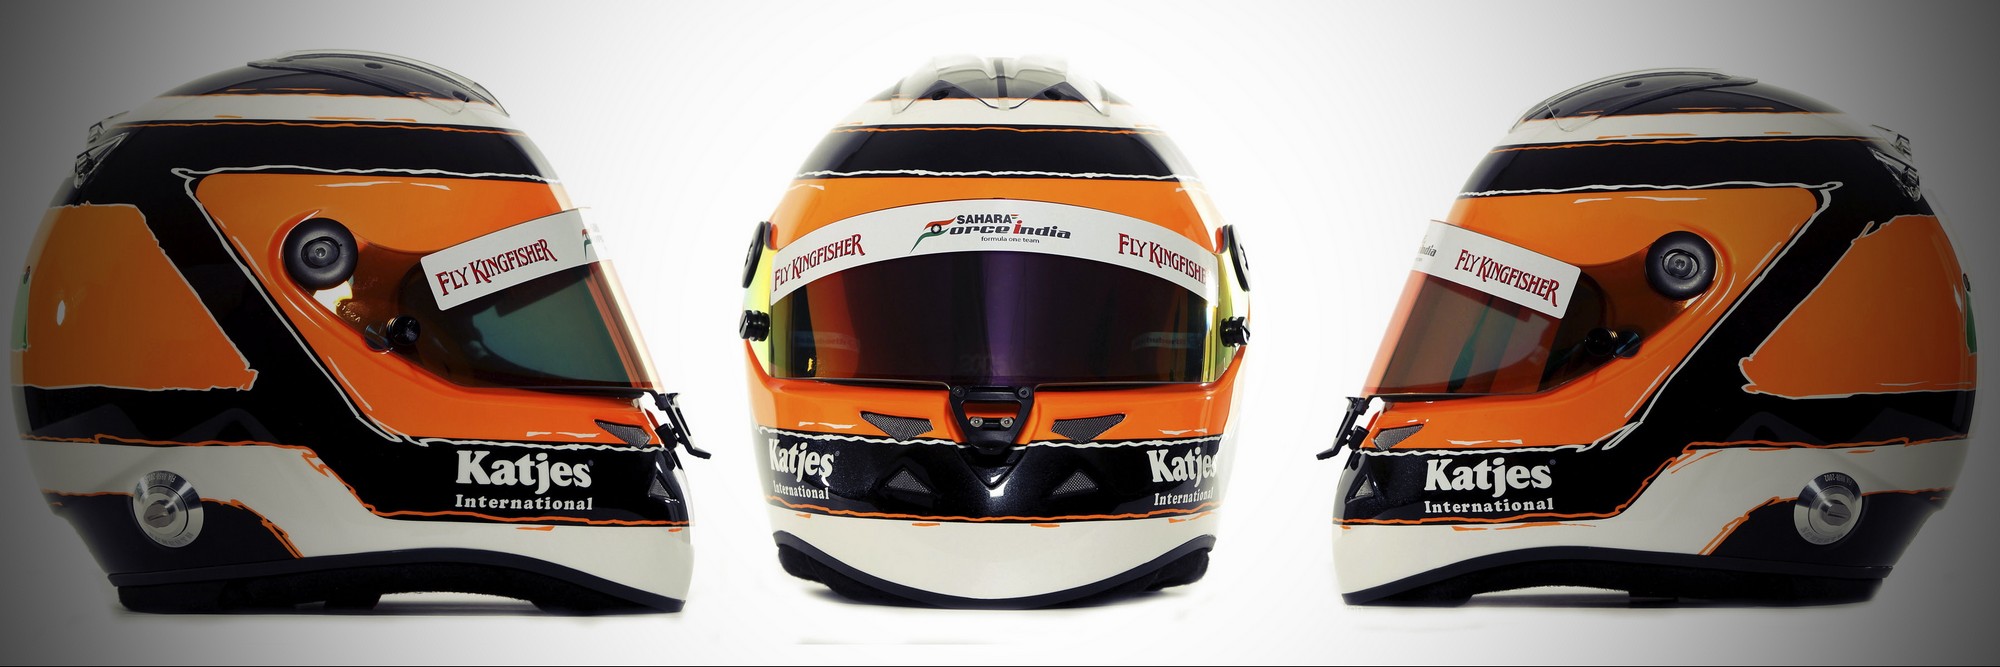 Шлем Нико Хюлькенберга на сезон 2012 года | 2012 helmet of Nico Hulkenberg